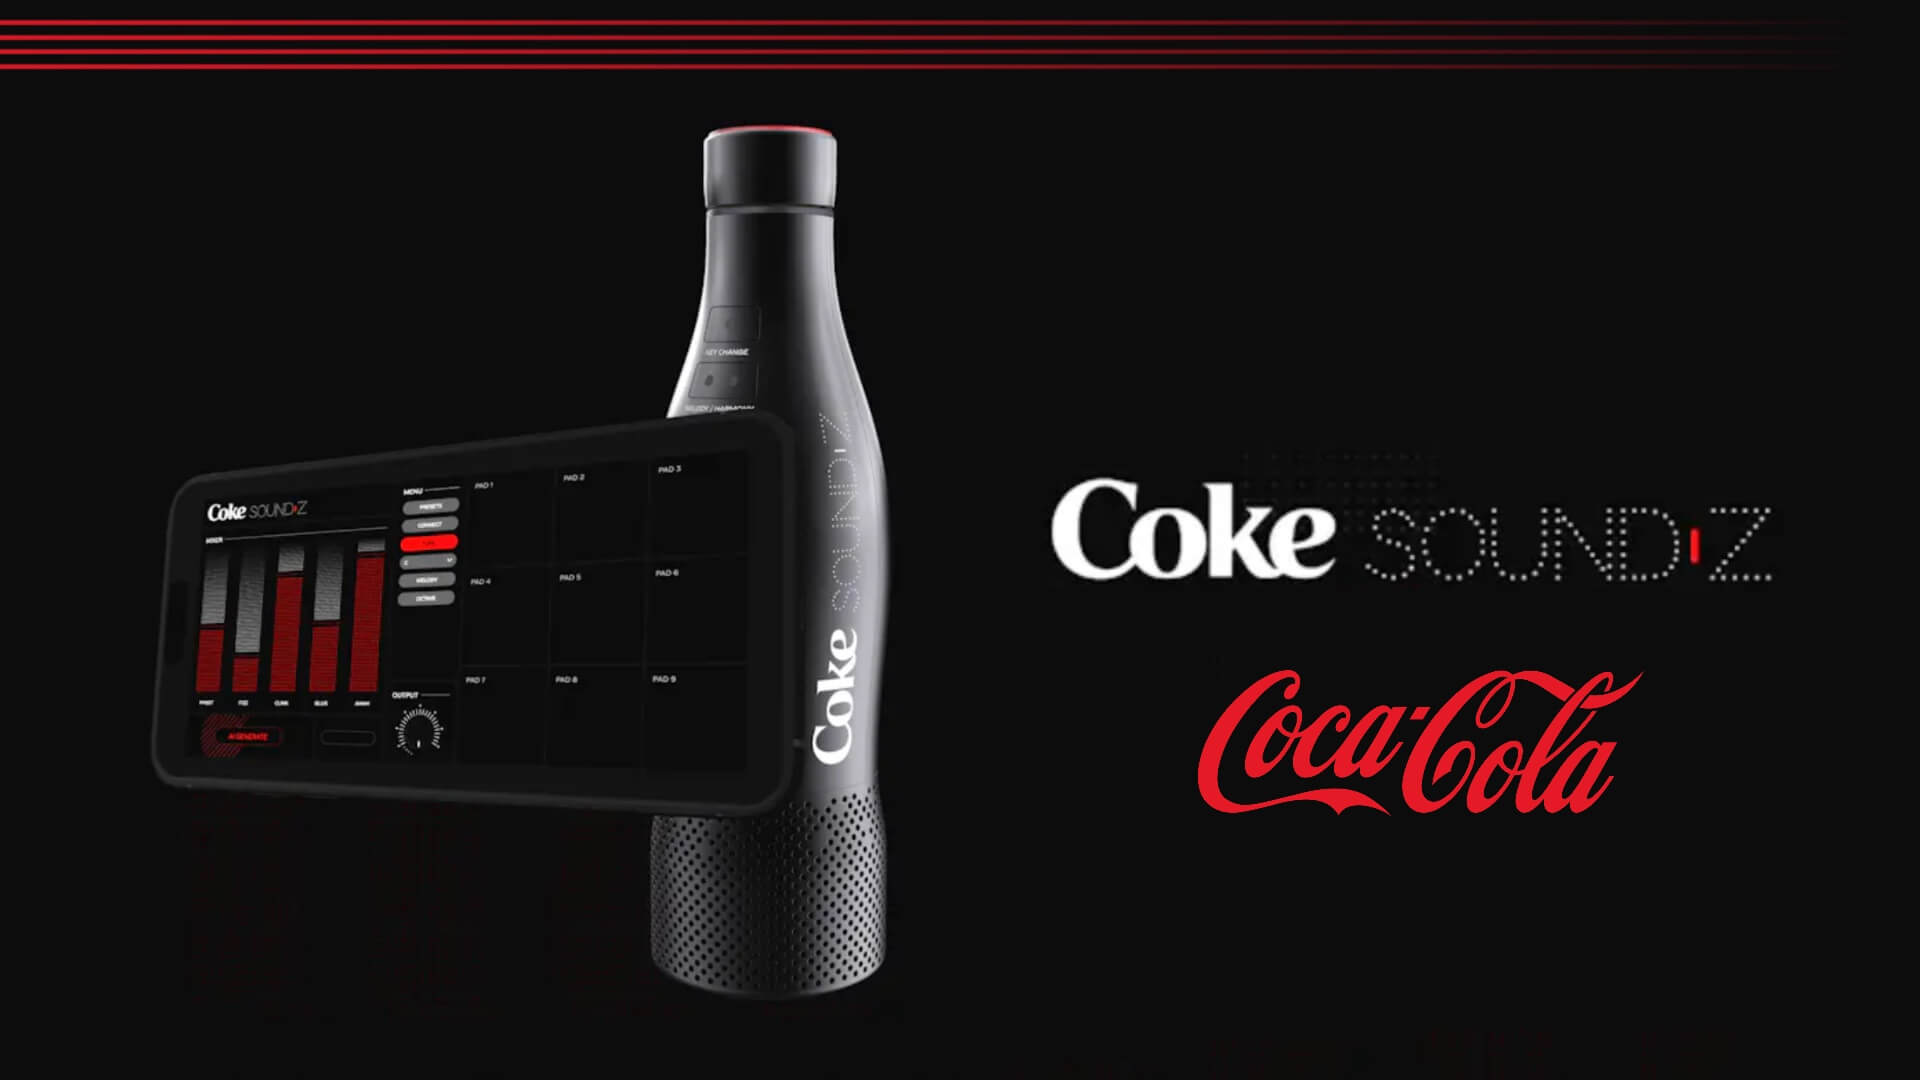 Coca-Cola transforma sons satisfatórios em música com inteligência artificial